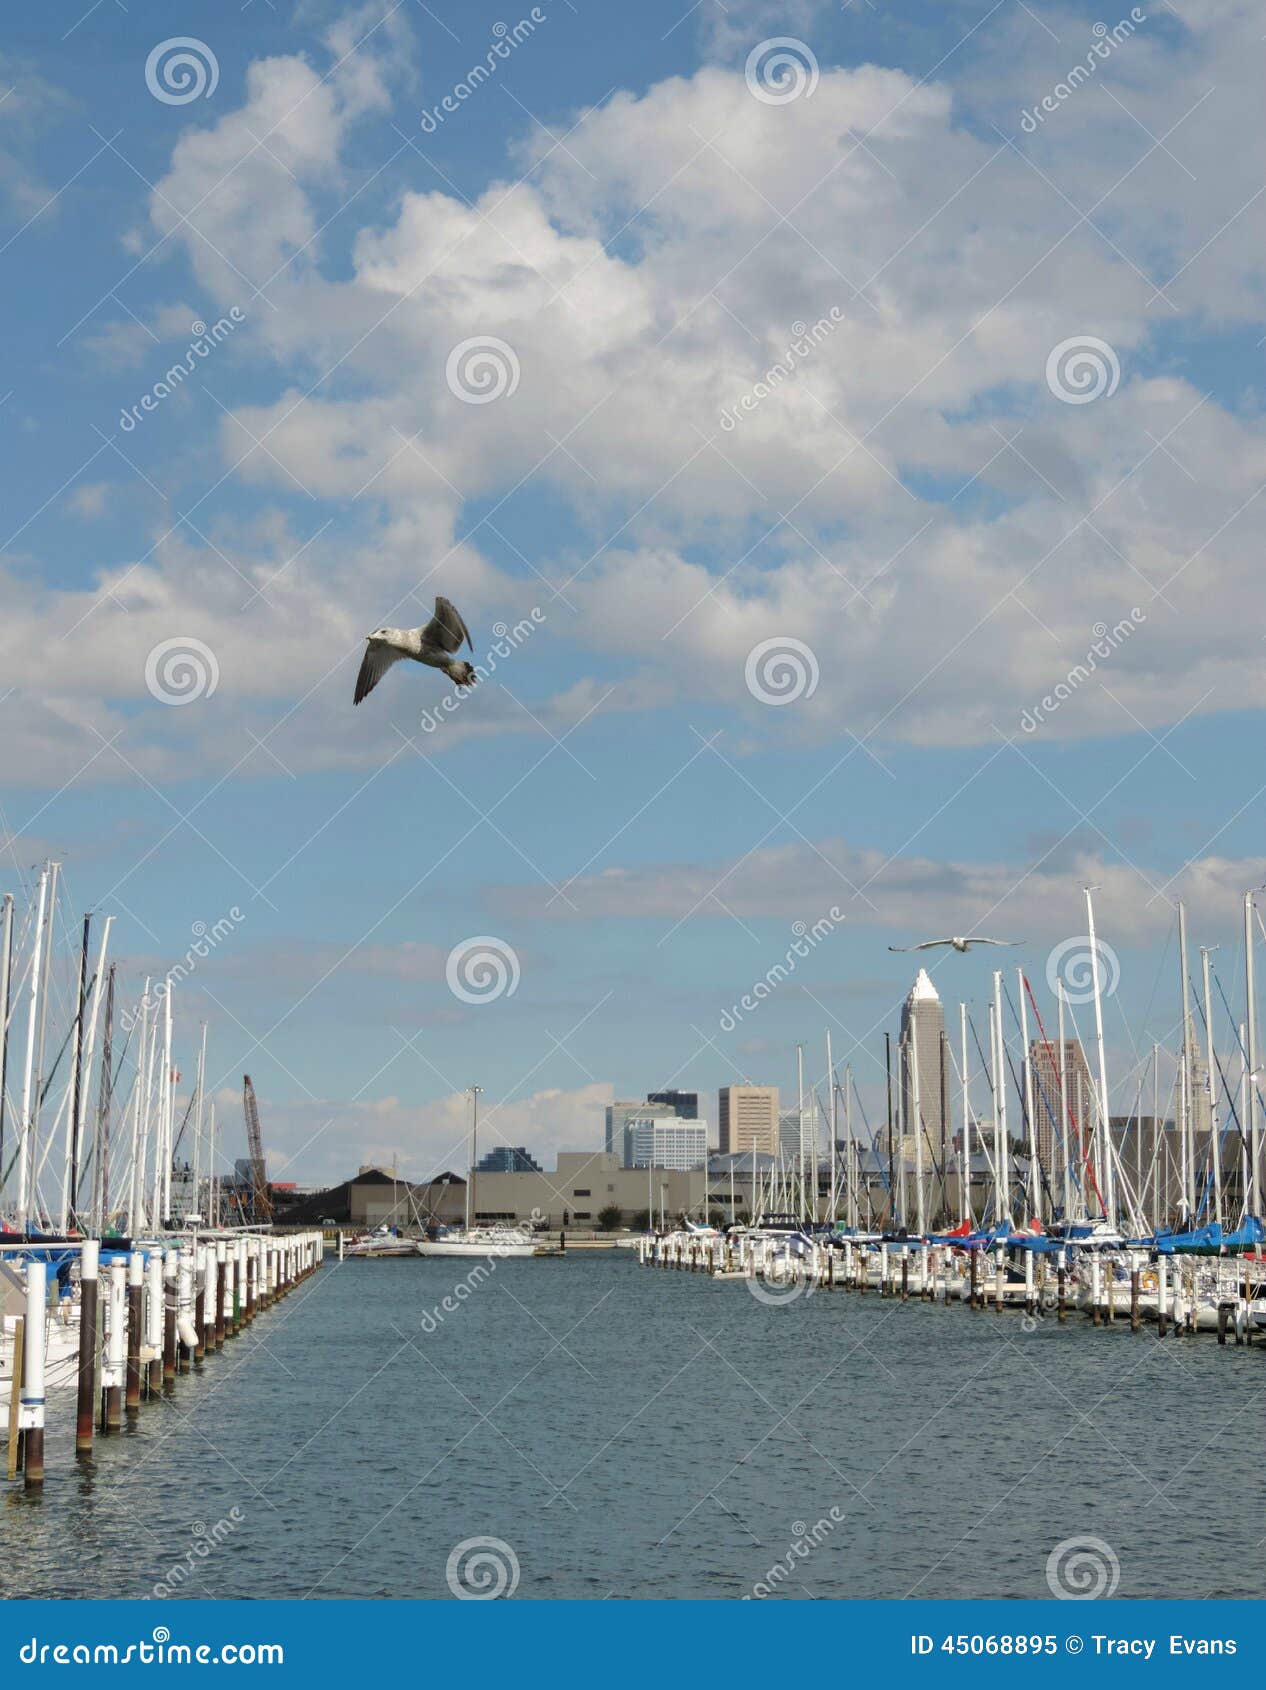 Seemöwen u. Segelboote. Eine szenische Ansicht von im Stadtzentrum gelegenem Cleveland im Abstand, in den Seemöwen, die friedlich gegen einen ursprünglichen blauen Himmel fliegen u. in den Reihen von den Segelbooten, die das Wasser an einem Yachtclub auf dem Eriesee zeichnen